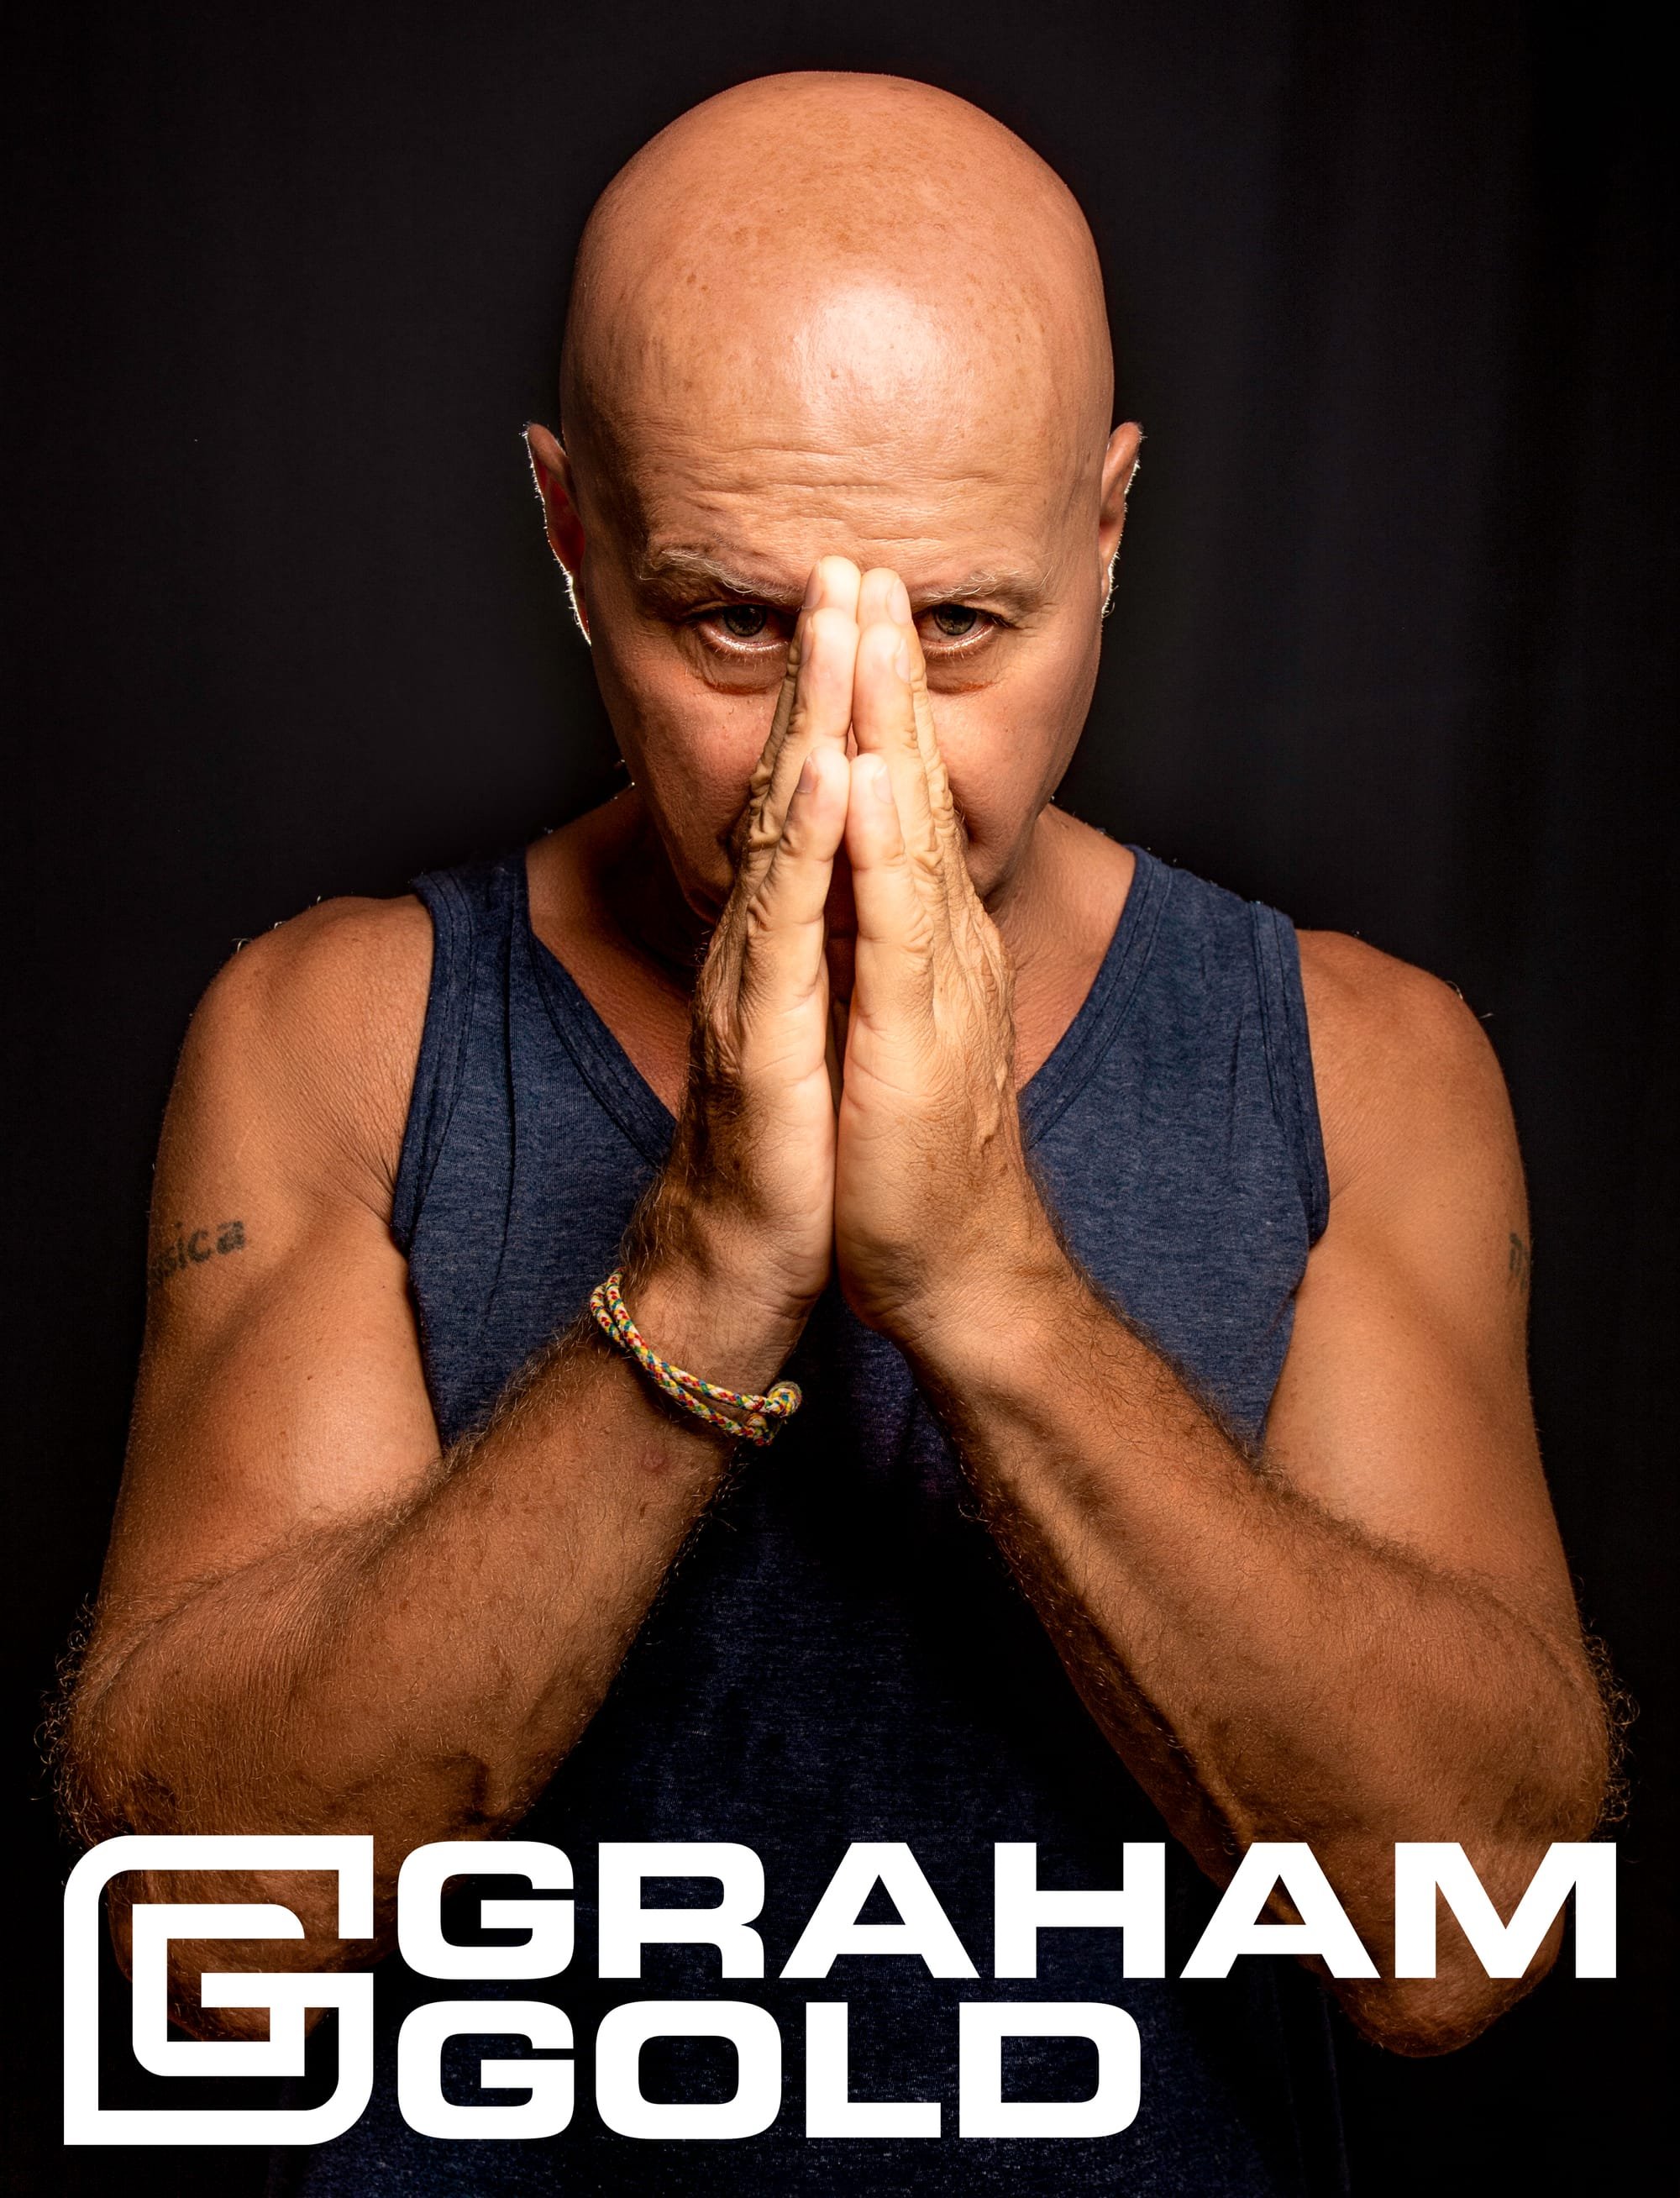 Graham Gold Announces playlist for 'Esta La Musica' 311.